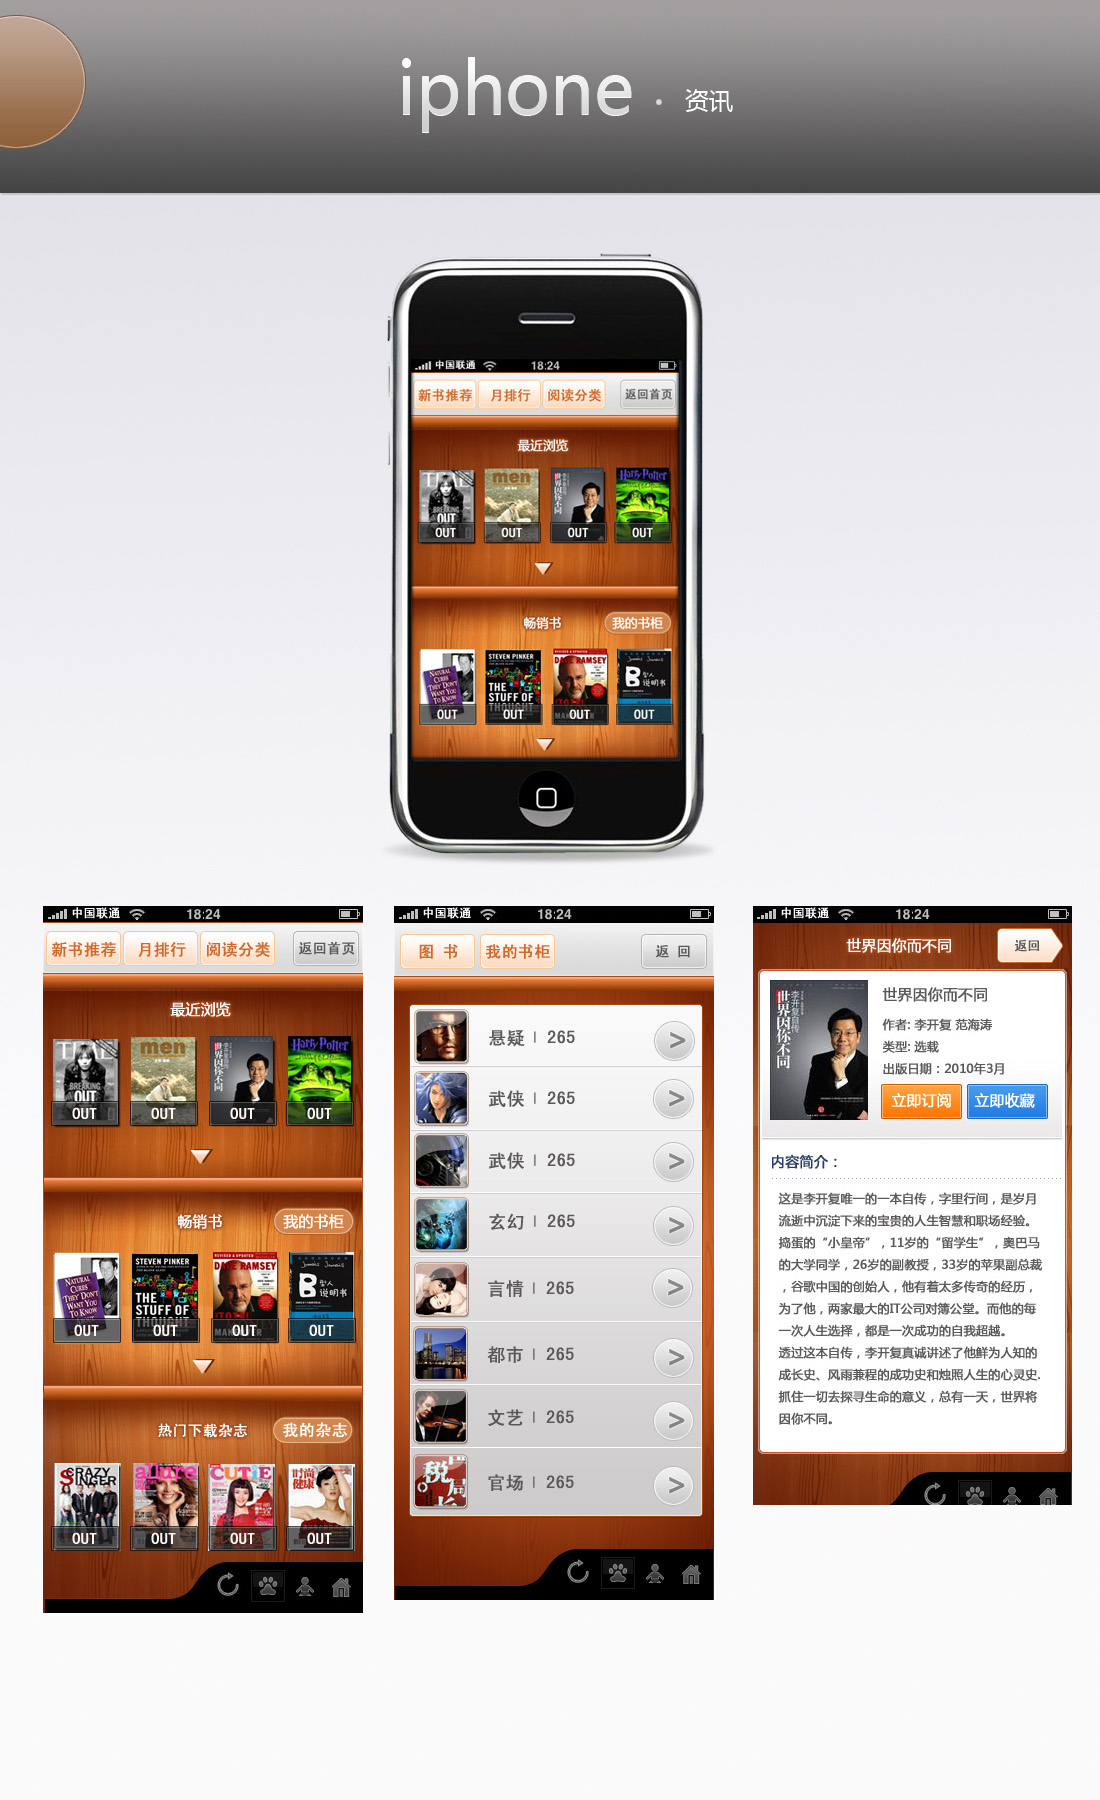 农行企业掌银下载app-中国农业银行企业掌银APP2.0.0 安卓系统客户端-精品下载